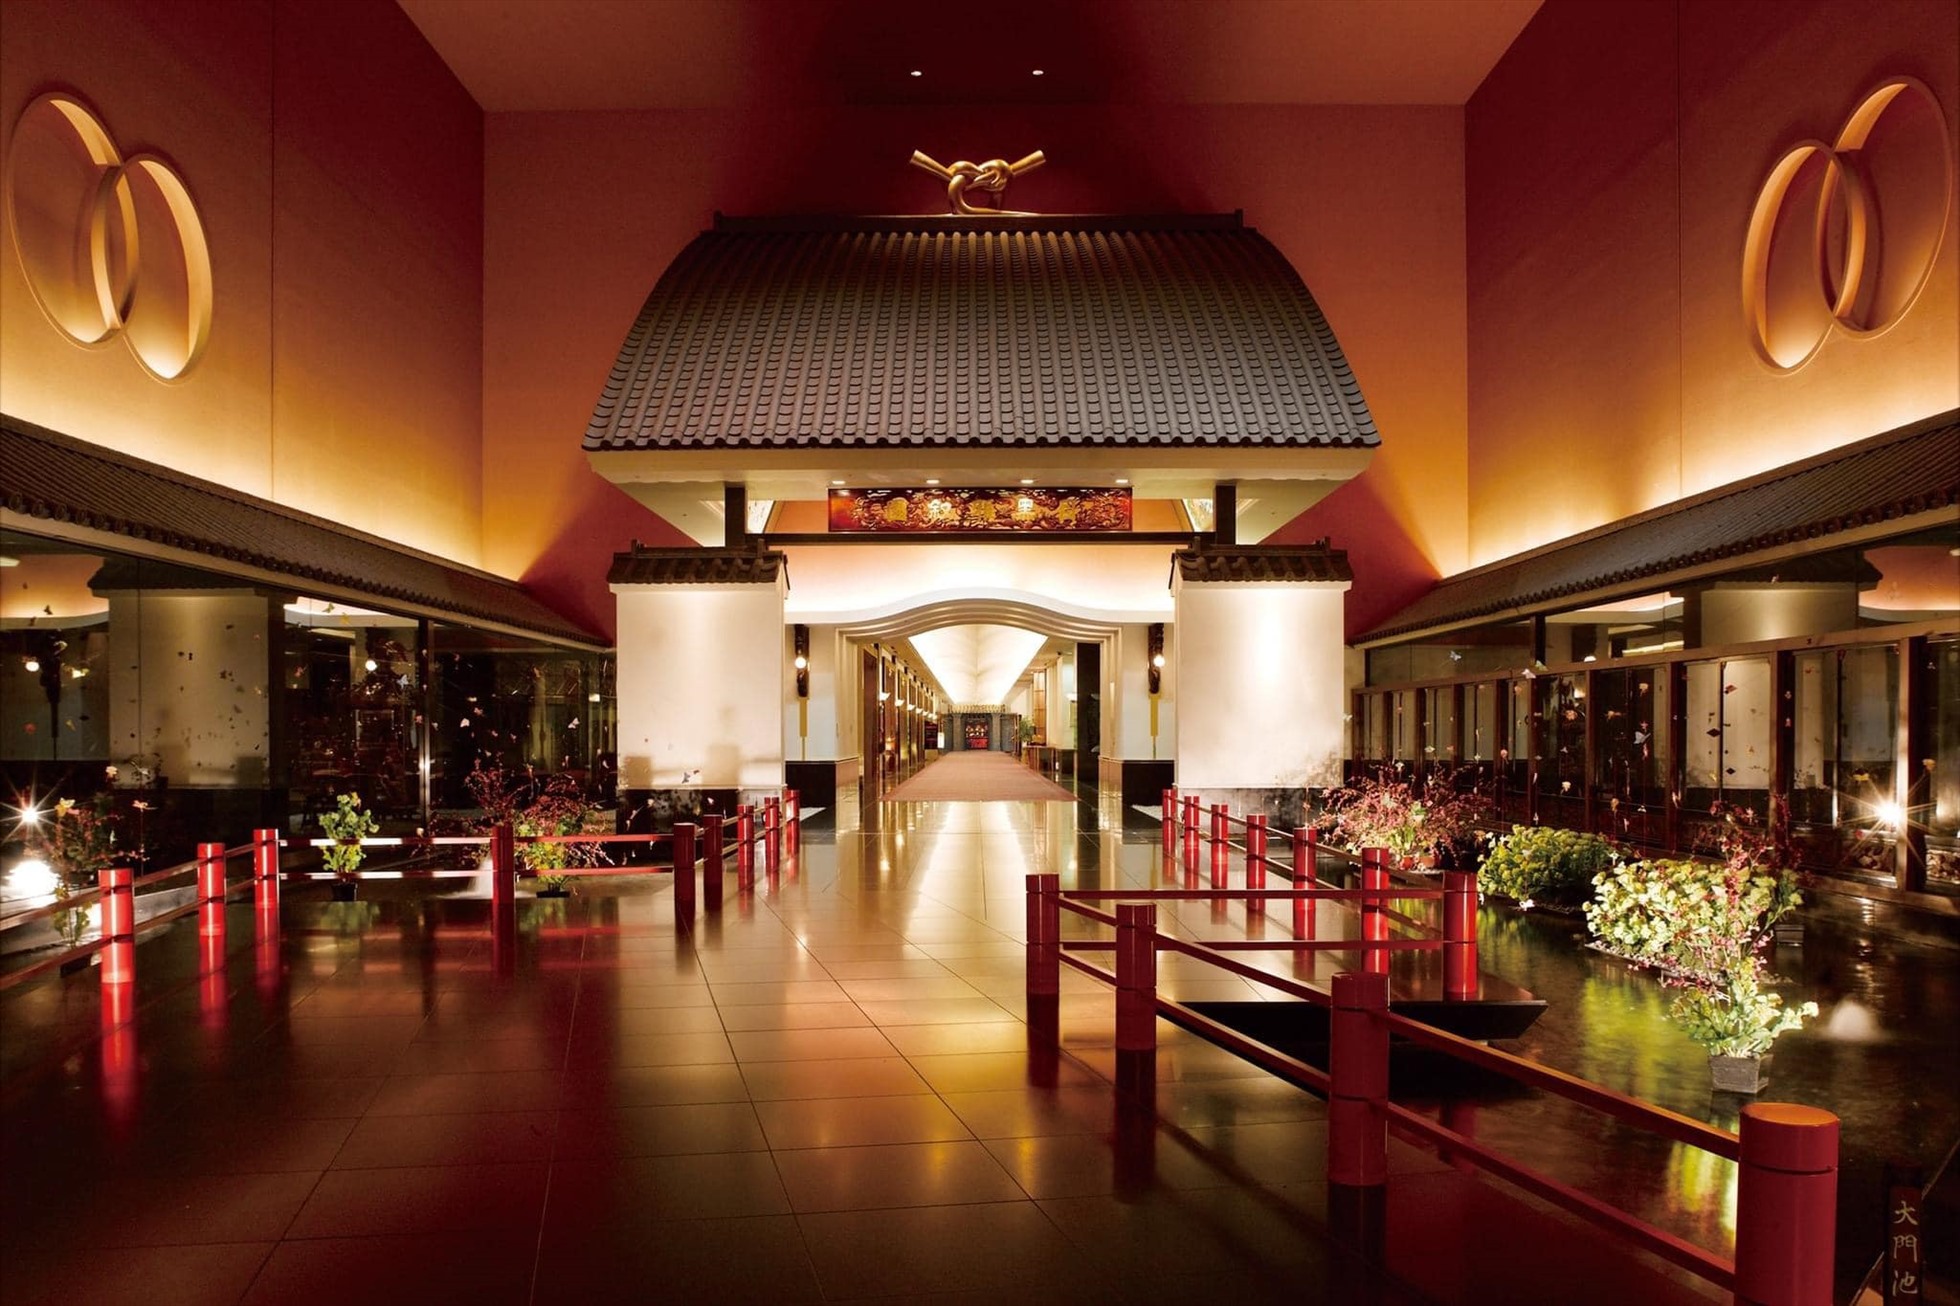 Chính thức khai trương từ năm 1928, khách sạn Gajoen nằm ngay trung tâm thủ đô Tokyo, Nhật Bản, được ví như “Cung điện của Thần rồng”.